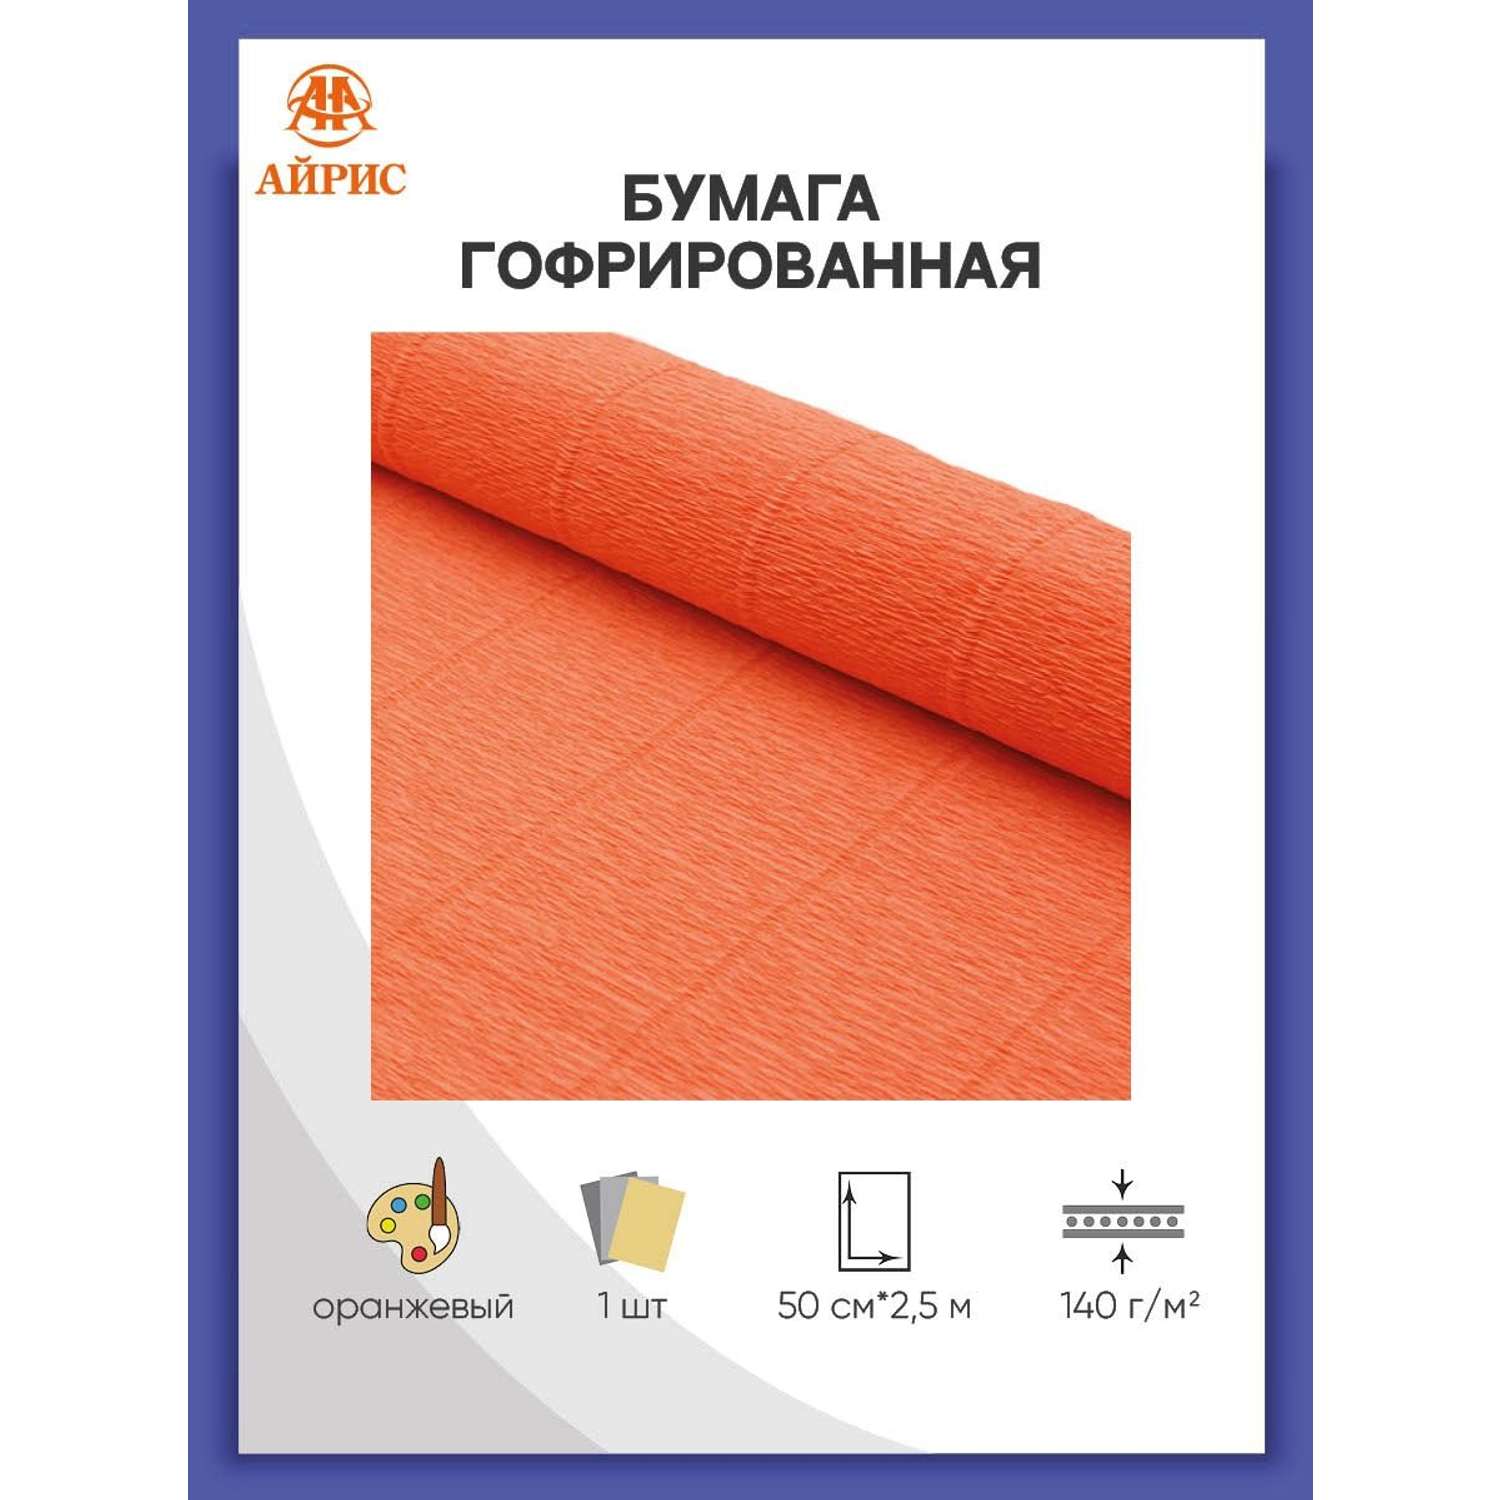 Бумага Айрис гофрированная креповая для творчества 50 см х 2.5 м 140 гр оранжевая - фото 1